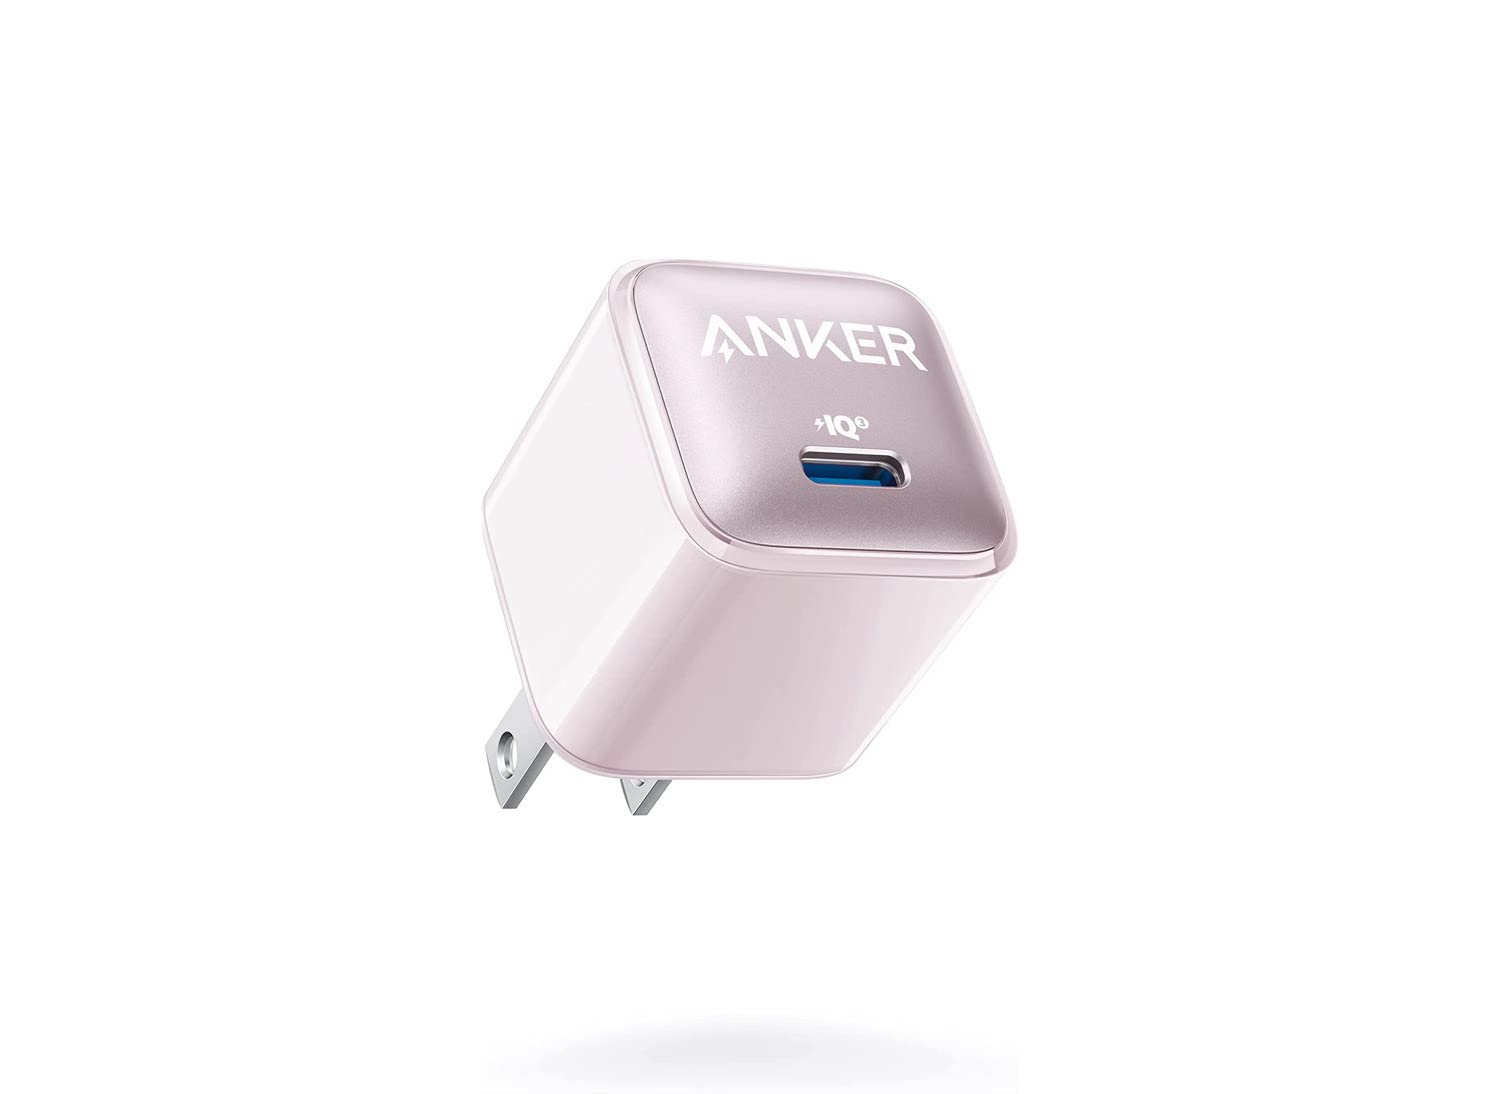 Anker、20W USB-C充電器の新色ピンク発売